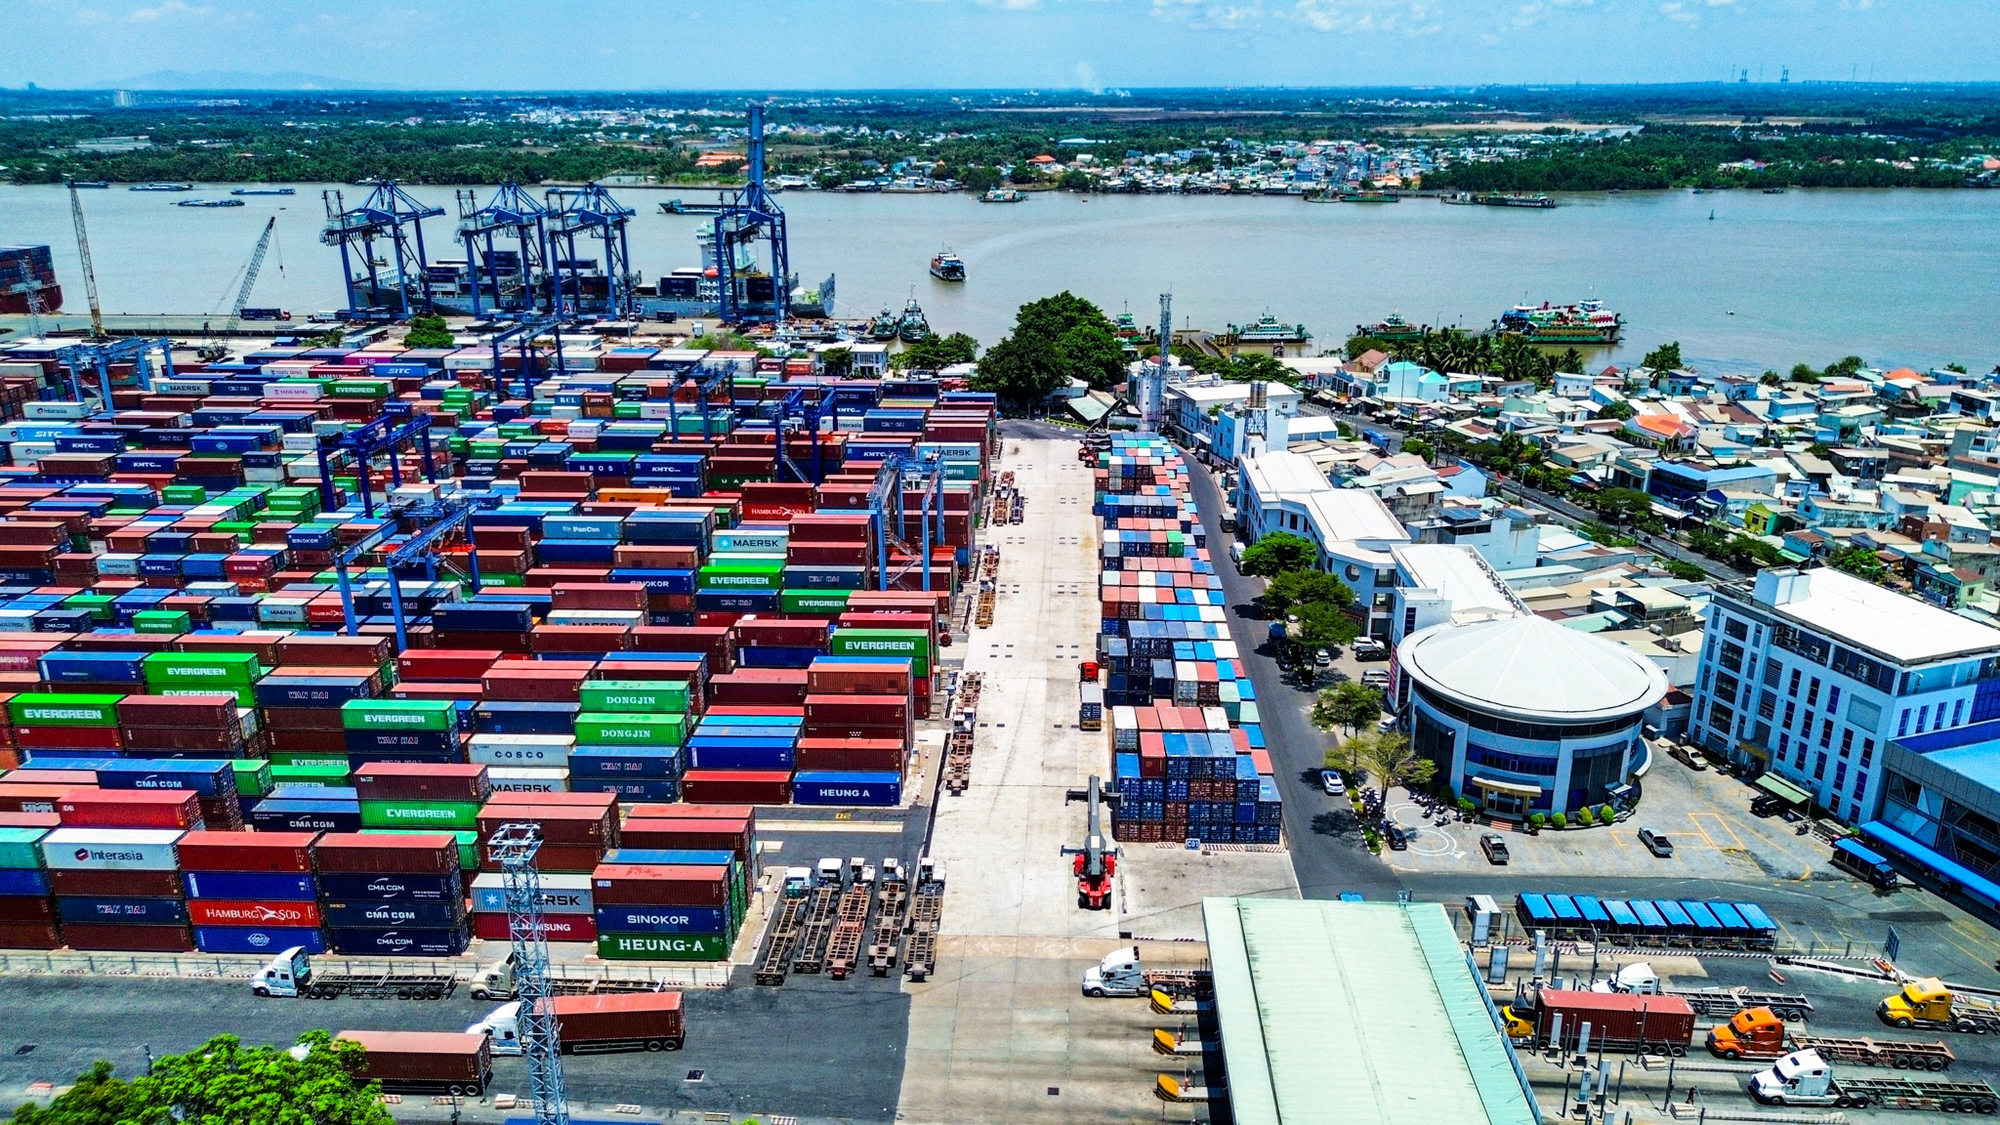 Toàn cảnh cảng biển lớn nhất Việt Nam, có lượng bốc dỡ container bằng tất cả cảng ở miền Bắc và miền Trung gộp lại - Ảnh 6.